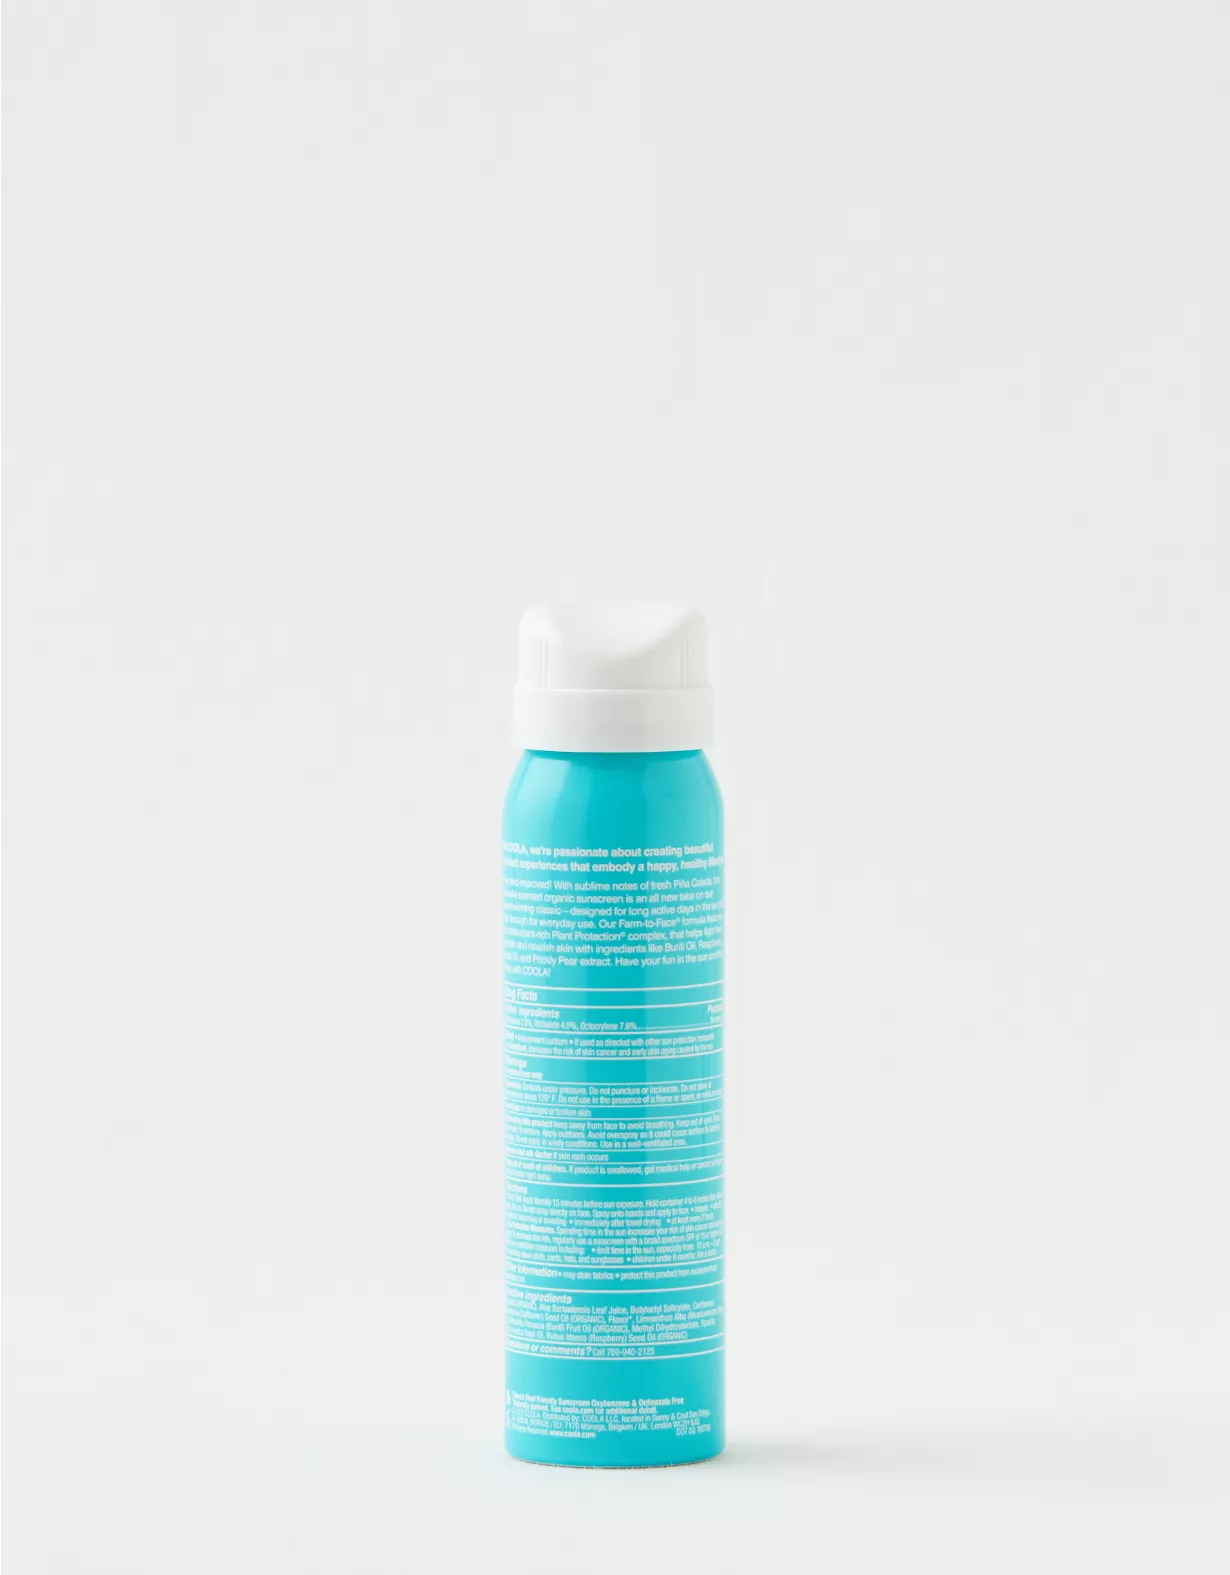 Coola Travel Size - Sunscreen Spray SPF 30 - Piña Colada